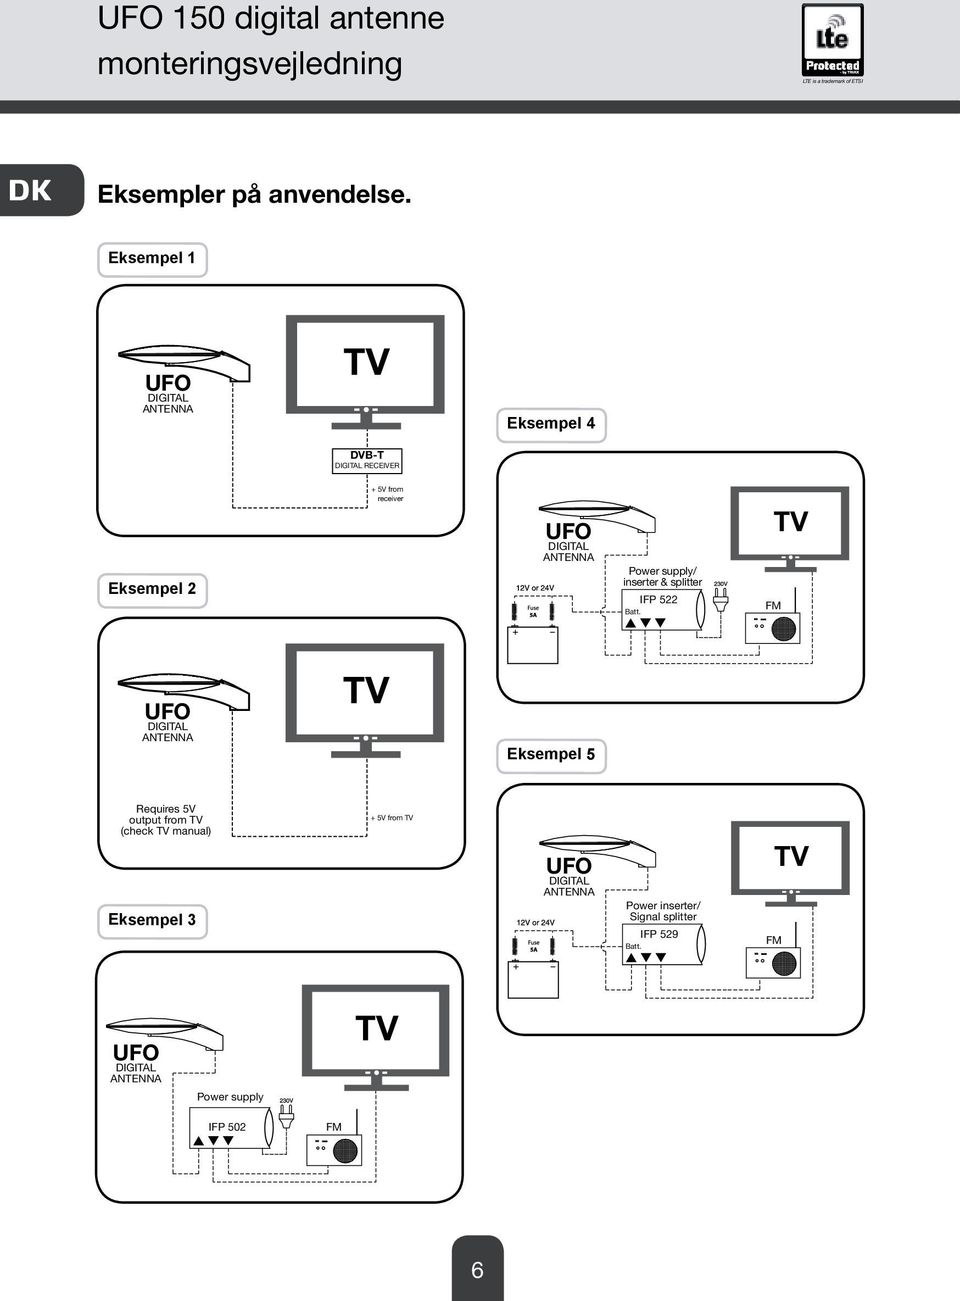 Eksempel 2 / inserter & splitter Requires 5V output from TV (check TV manual) Eksempel 3 + 5V from TV Eksempel 5 Power